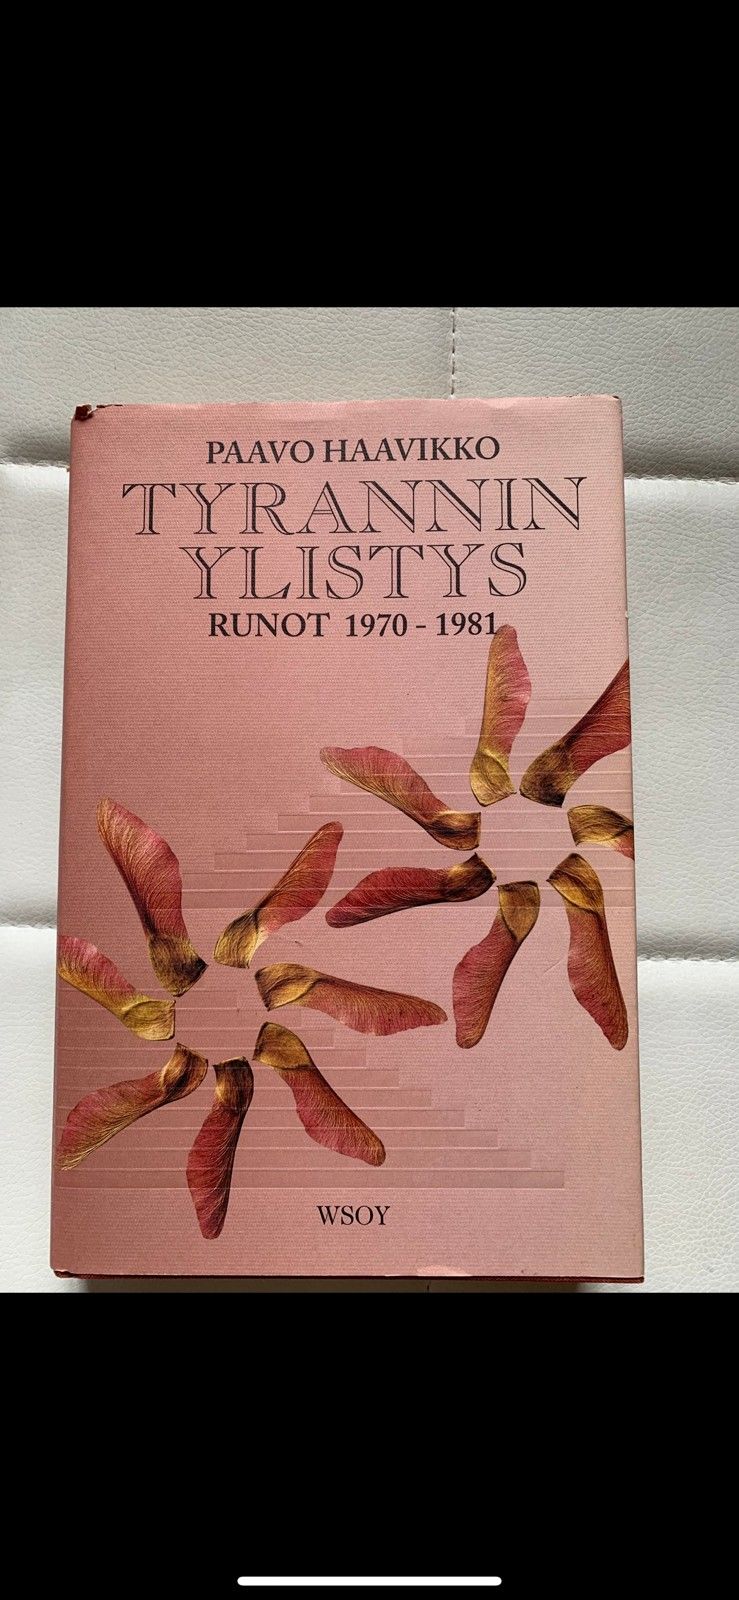 Paavo Haavikko runokirja Tyrannin ylistys